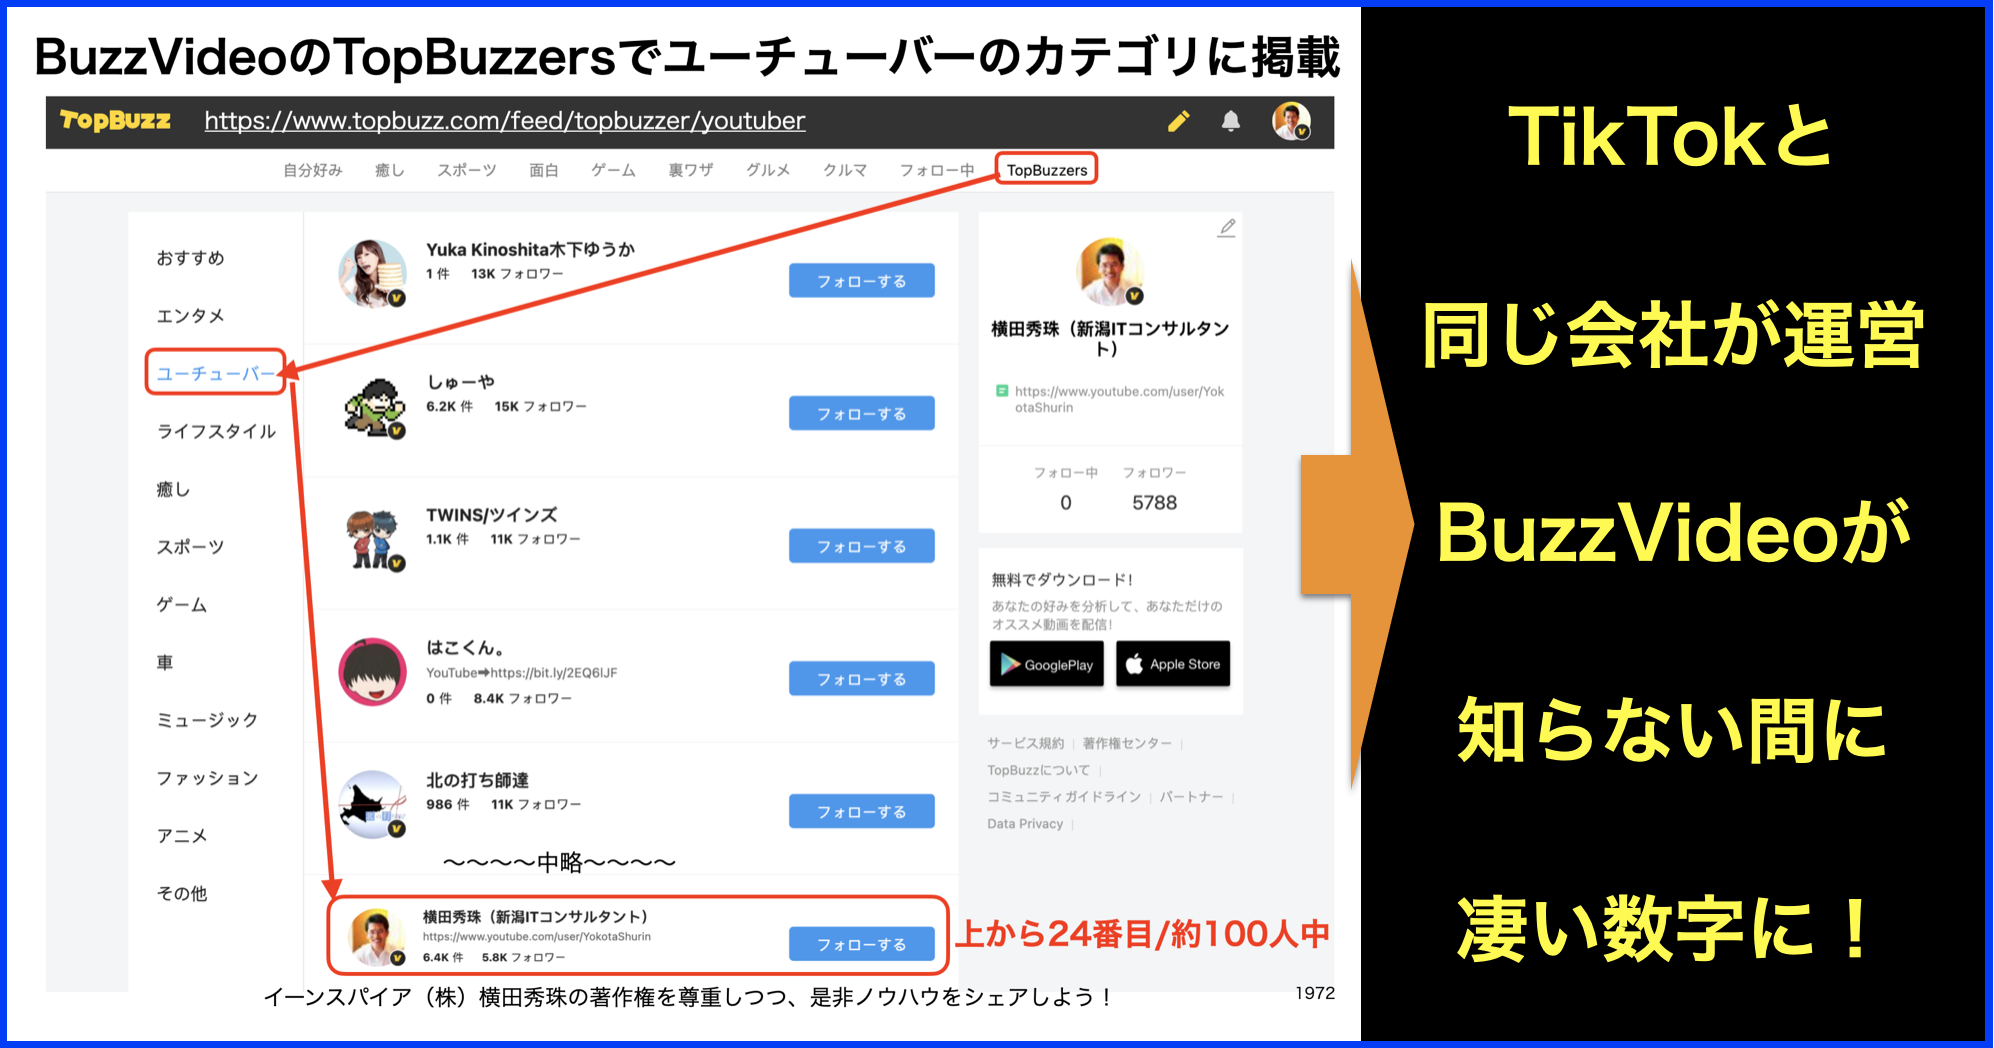 #TopBuzz #BuzzVideo に関するニュースまとめ(随時更新)